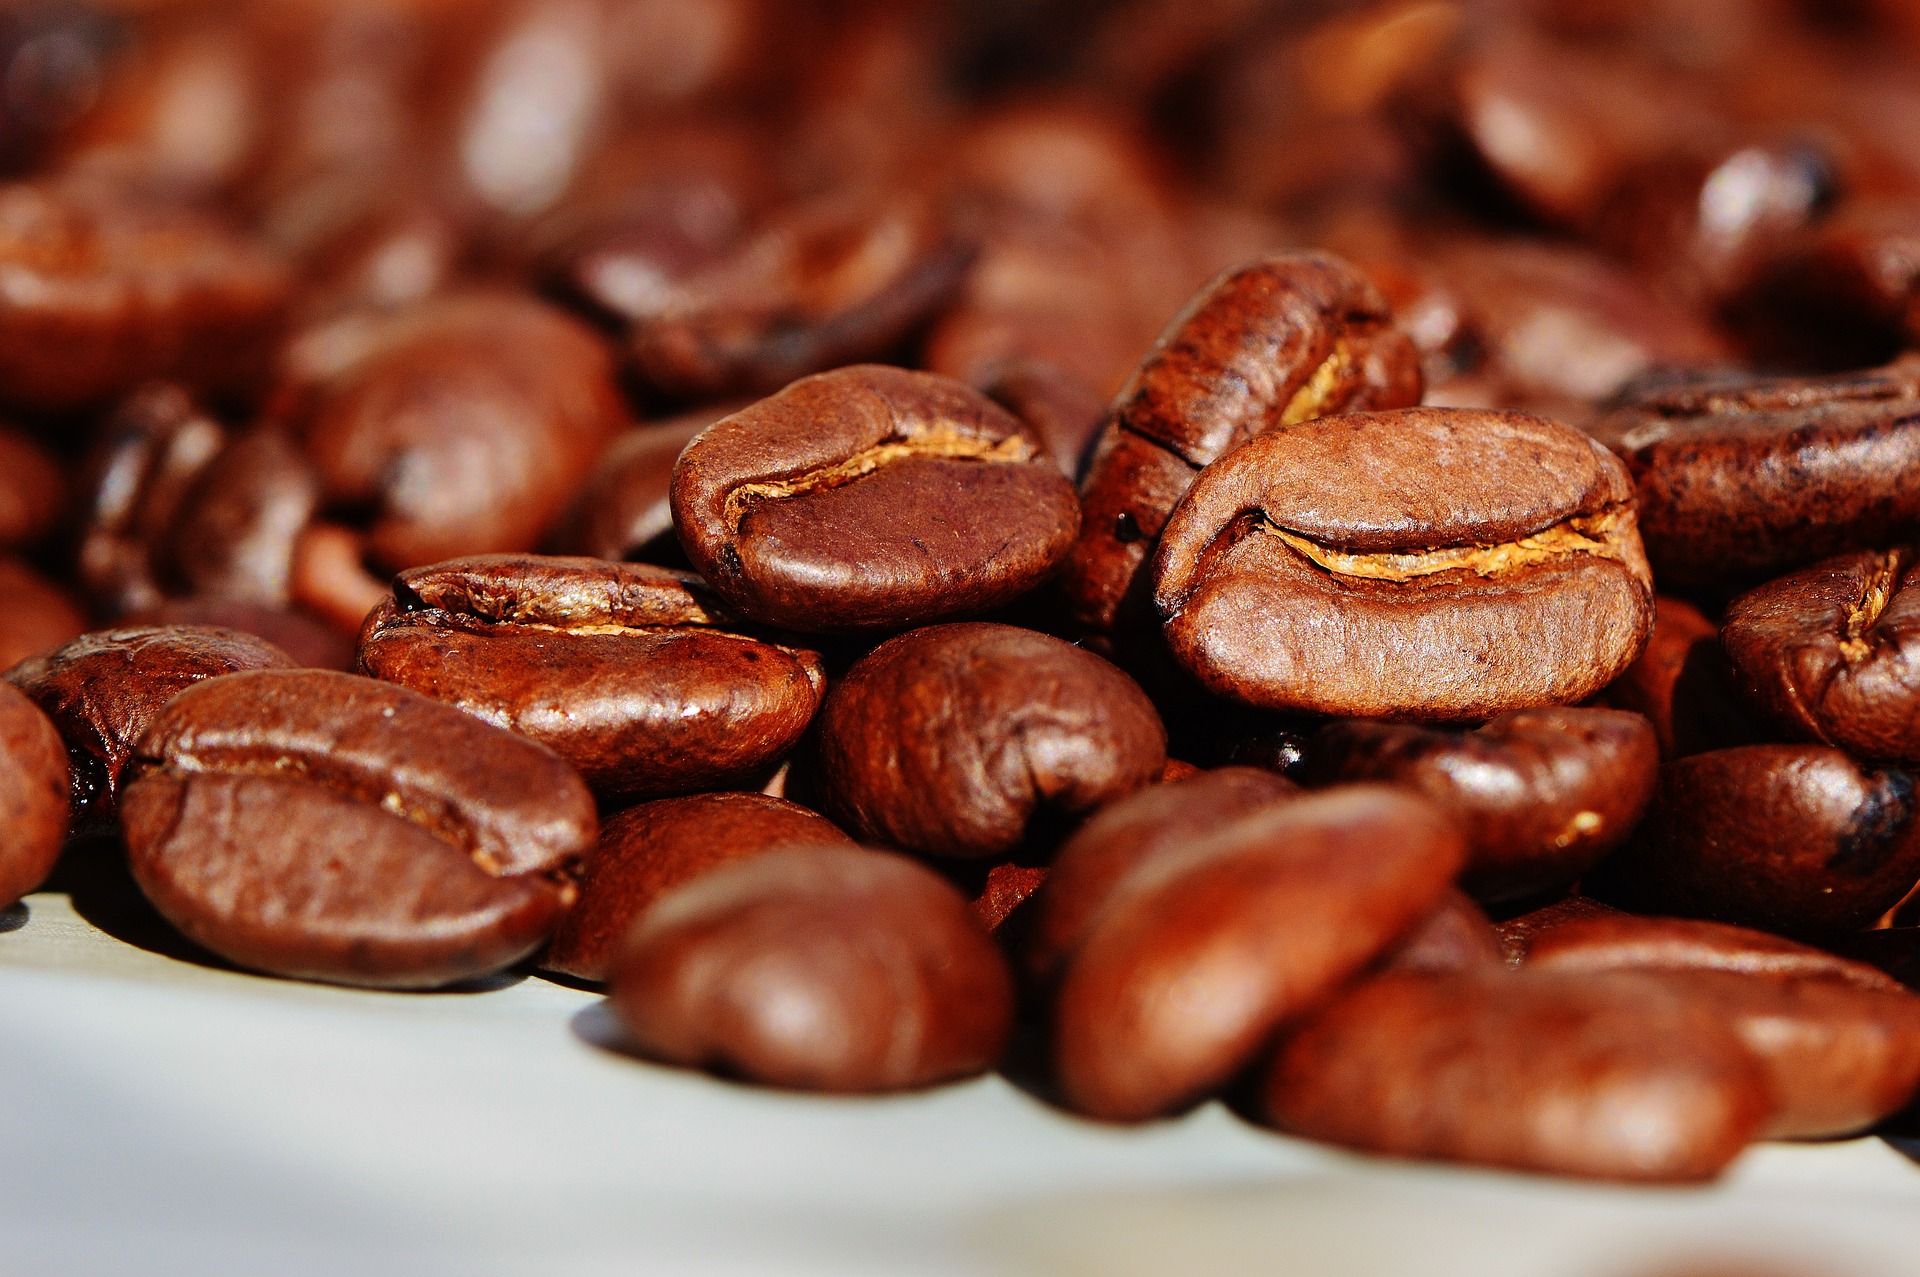 Exportação de café em nível mundial totaliza 72,19 milhões de sacas no acumulado de sete meses